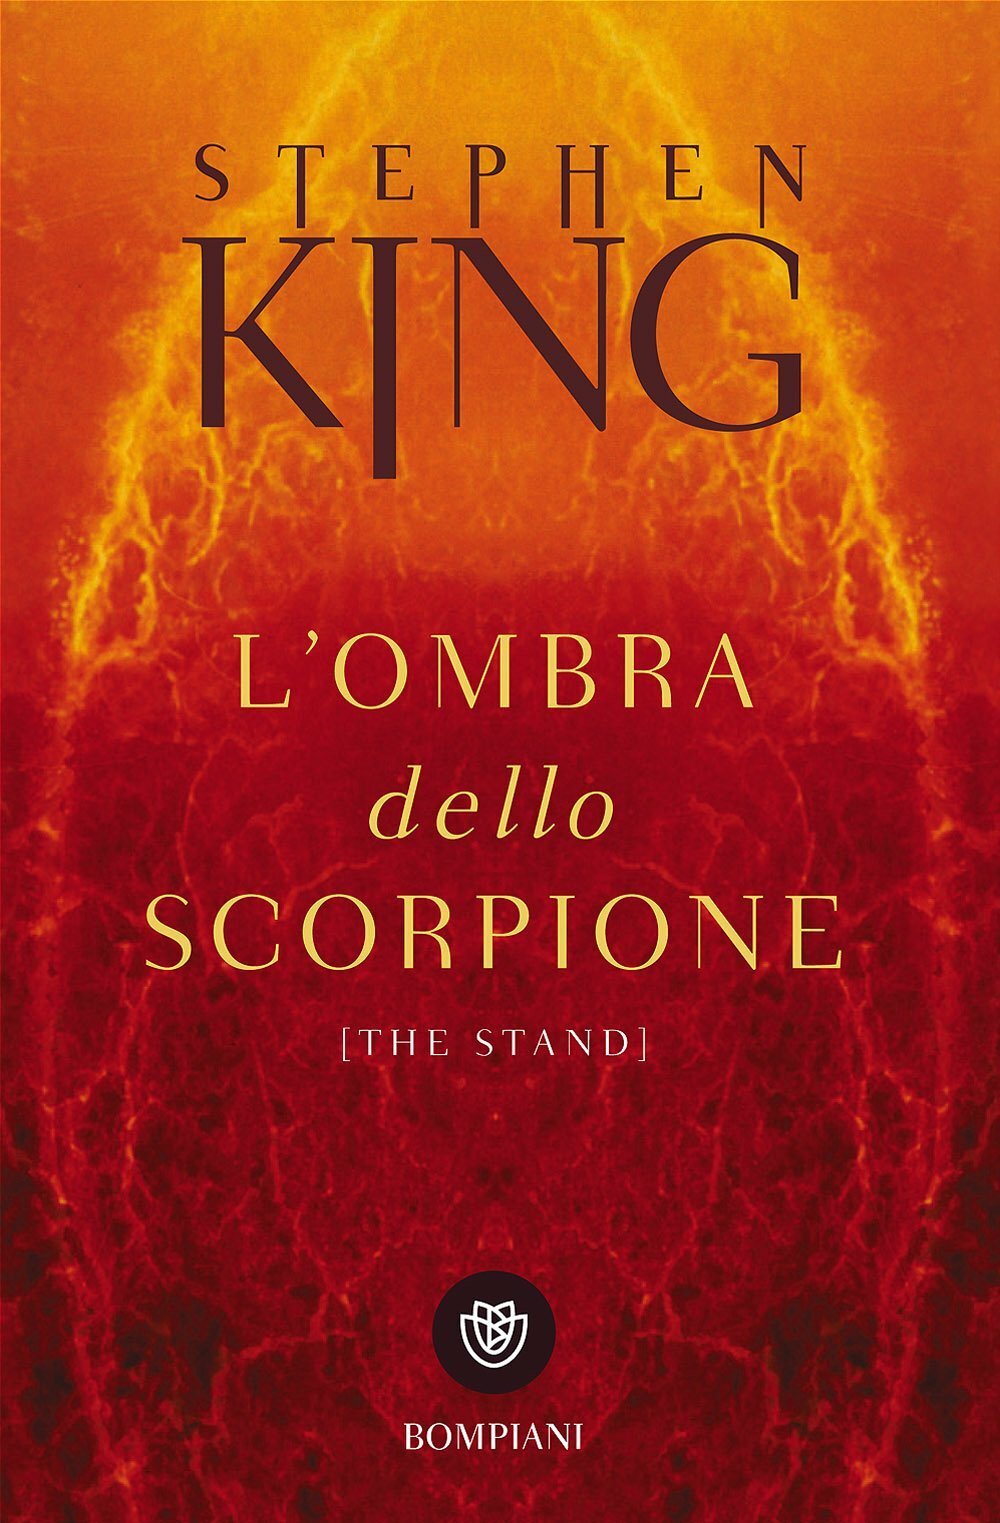 L'ombra dello scorpione, il romanzo di Stephen King